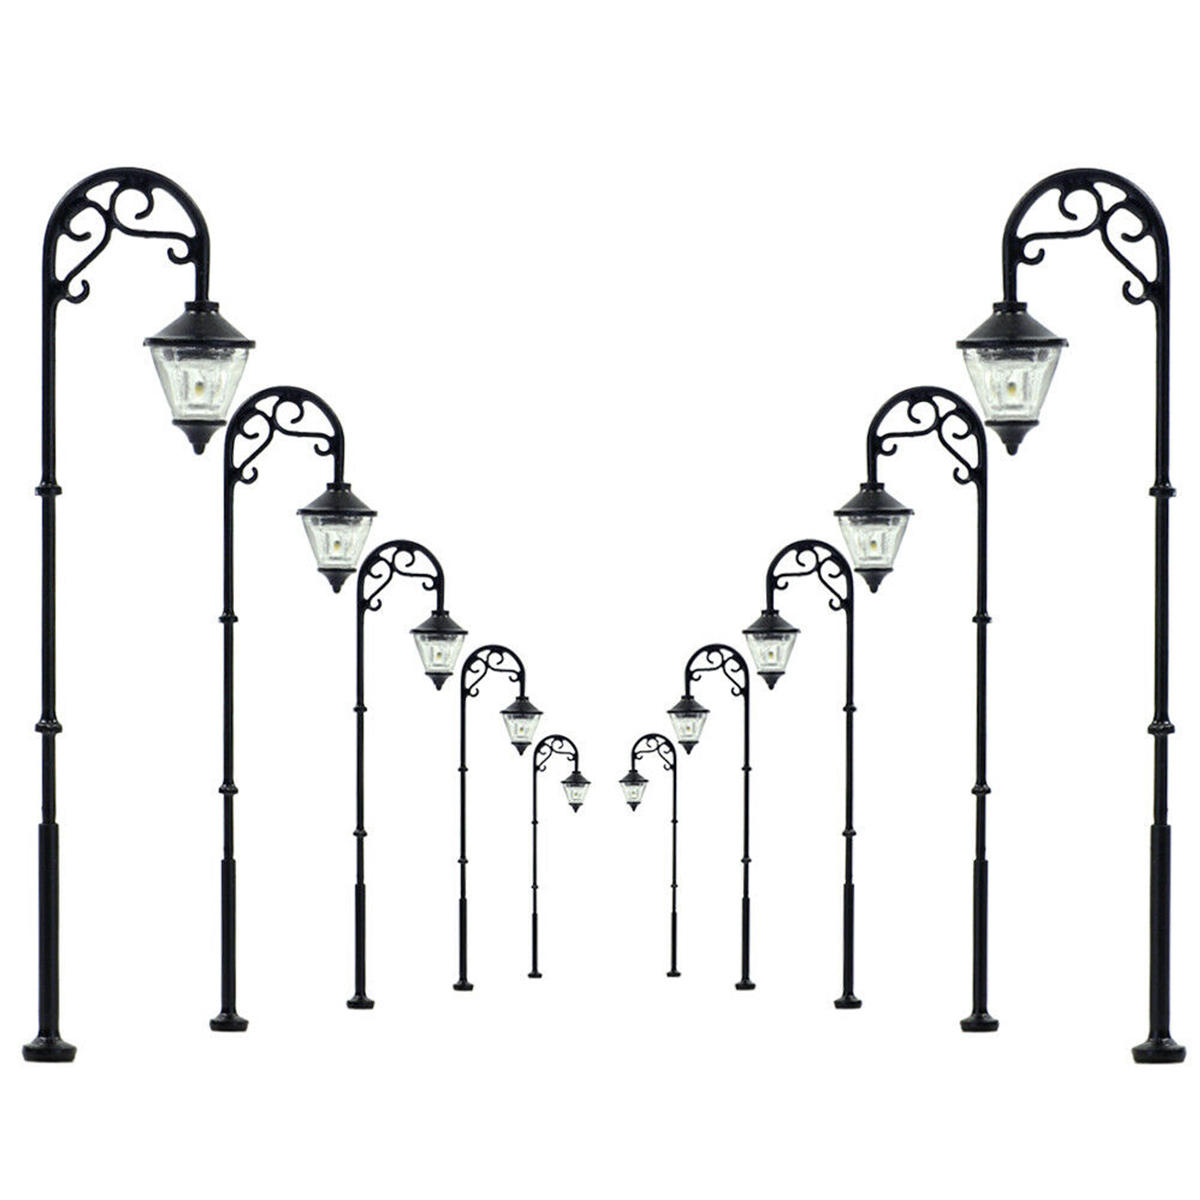 5 stuks schaal 1:87 modelspoor lantaarnpaal lampen led straat tuin trein licht